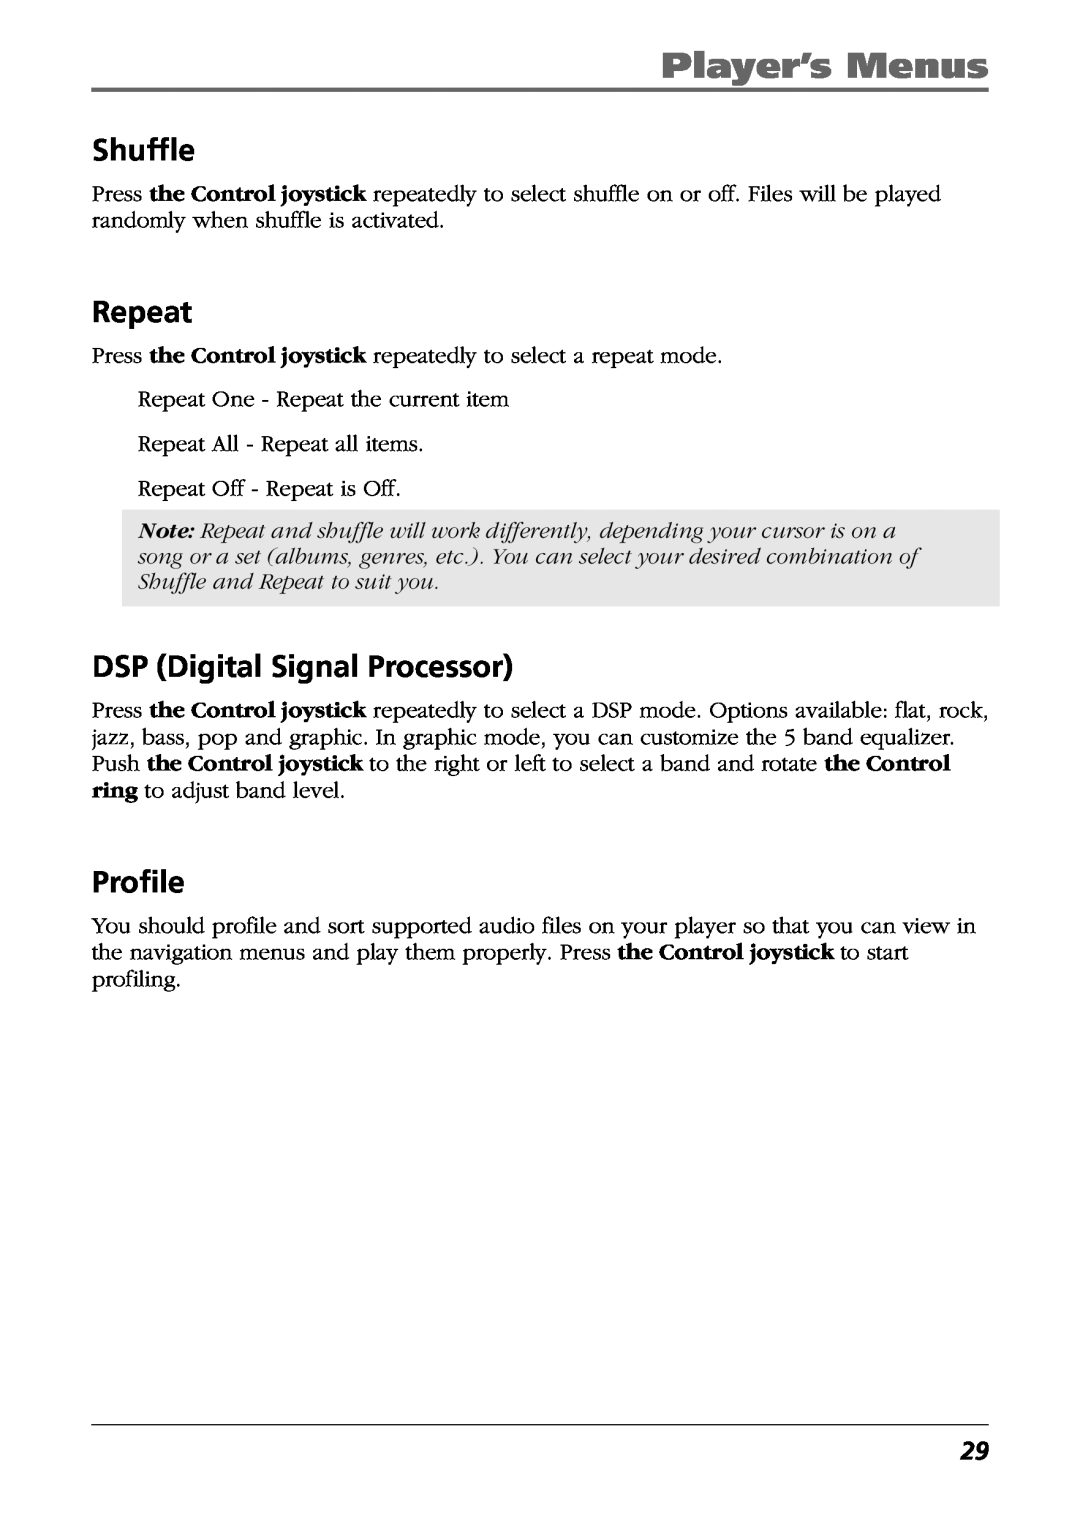 RCA H115/H125 manual Shuffle, Repeat, DSP Digital Signal Processor, Profile, Player’s Menus 